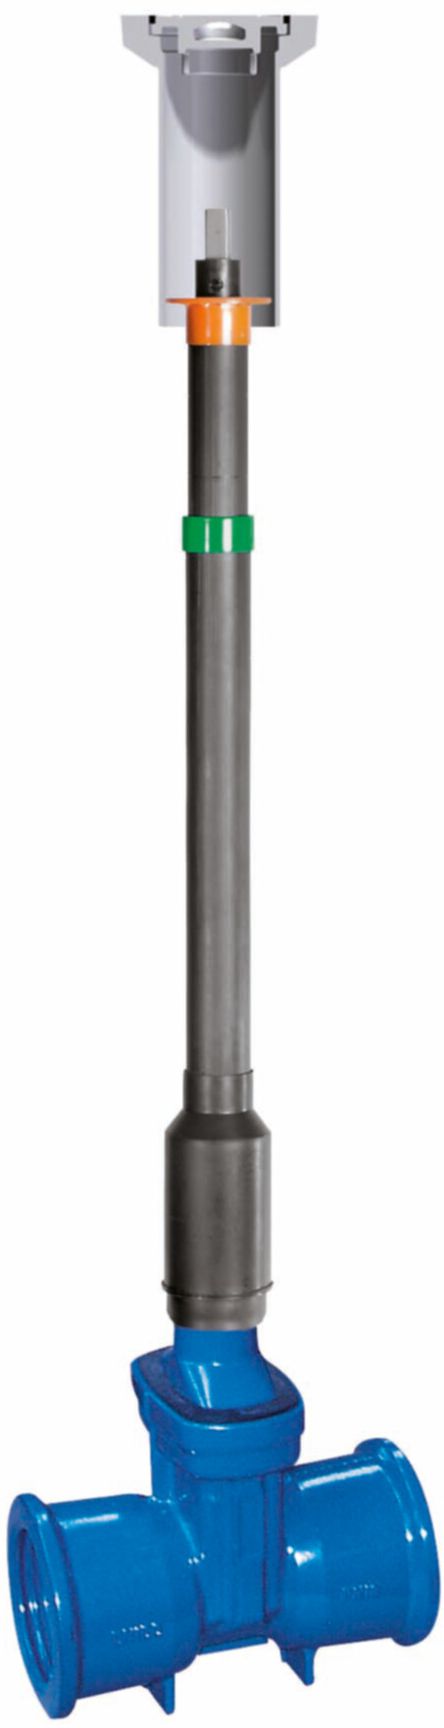 Teleskop-Einbaugarnitur Fig. 6895 L1 DN 20-50 GT 0.97 - 1.18 m - Von Roll Armaturen